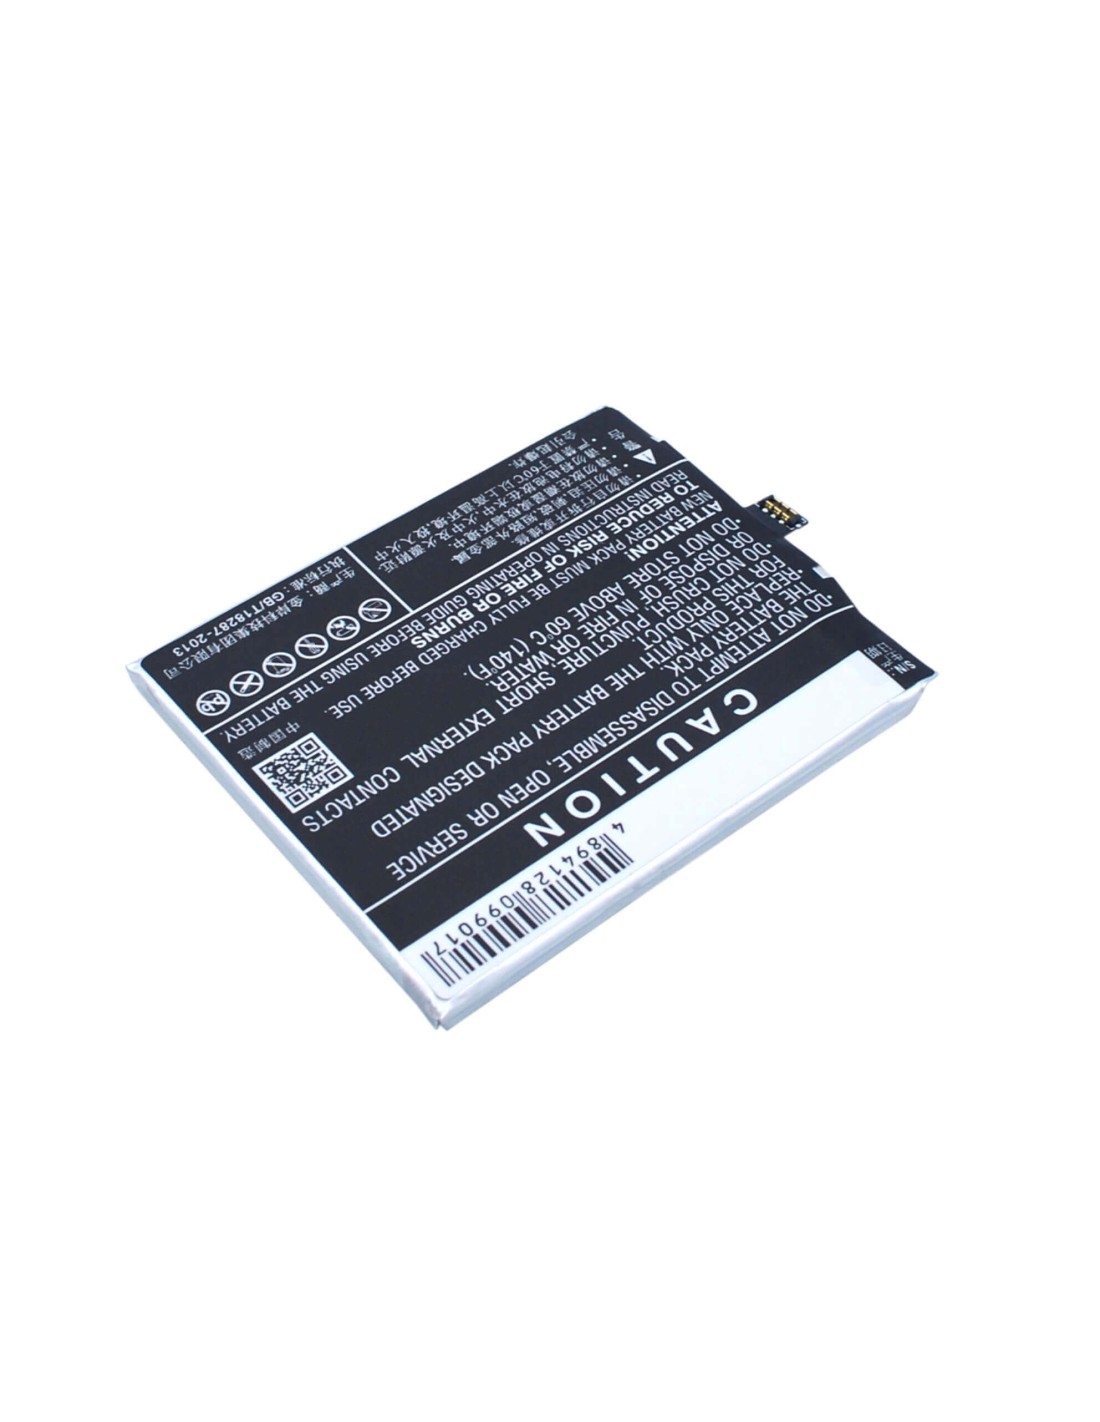 Battery for Meizu MX4 Pro, MX4SWDS0, M462U 3.8V, 3350mAh - 12.73Wh